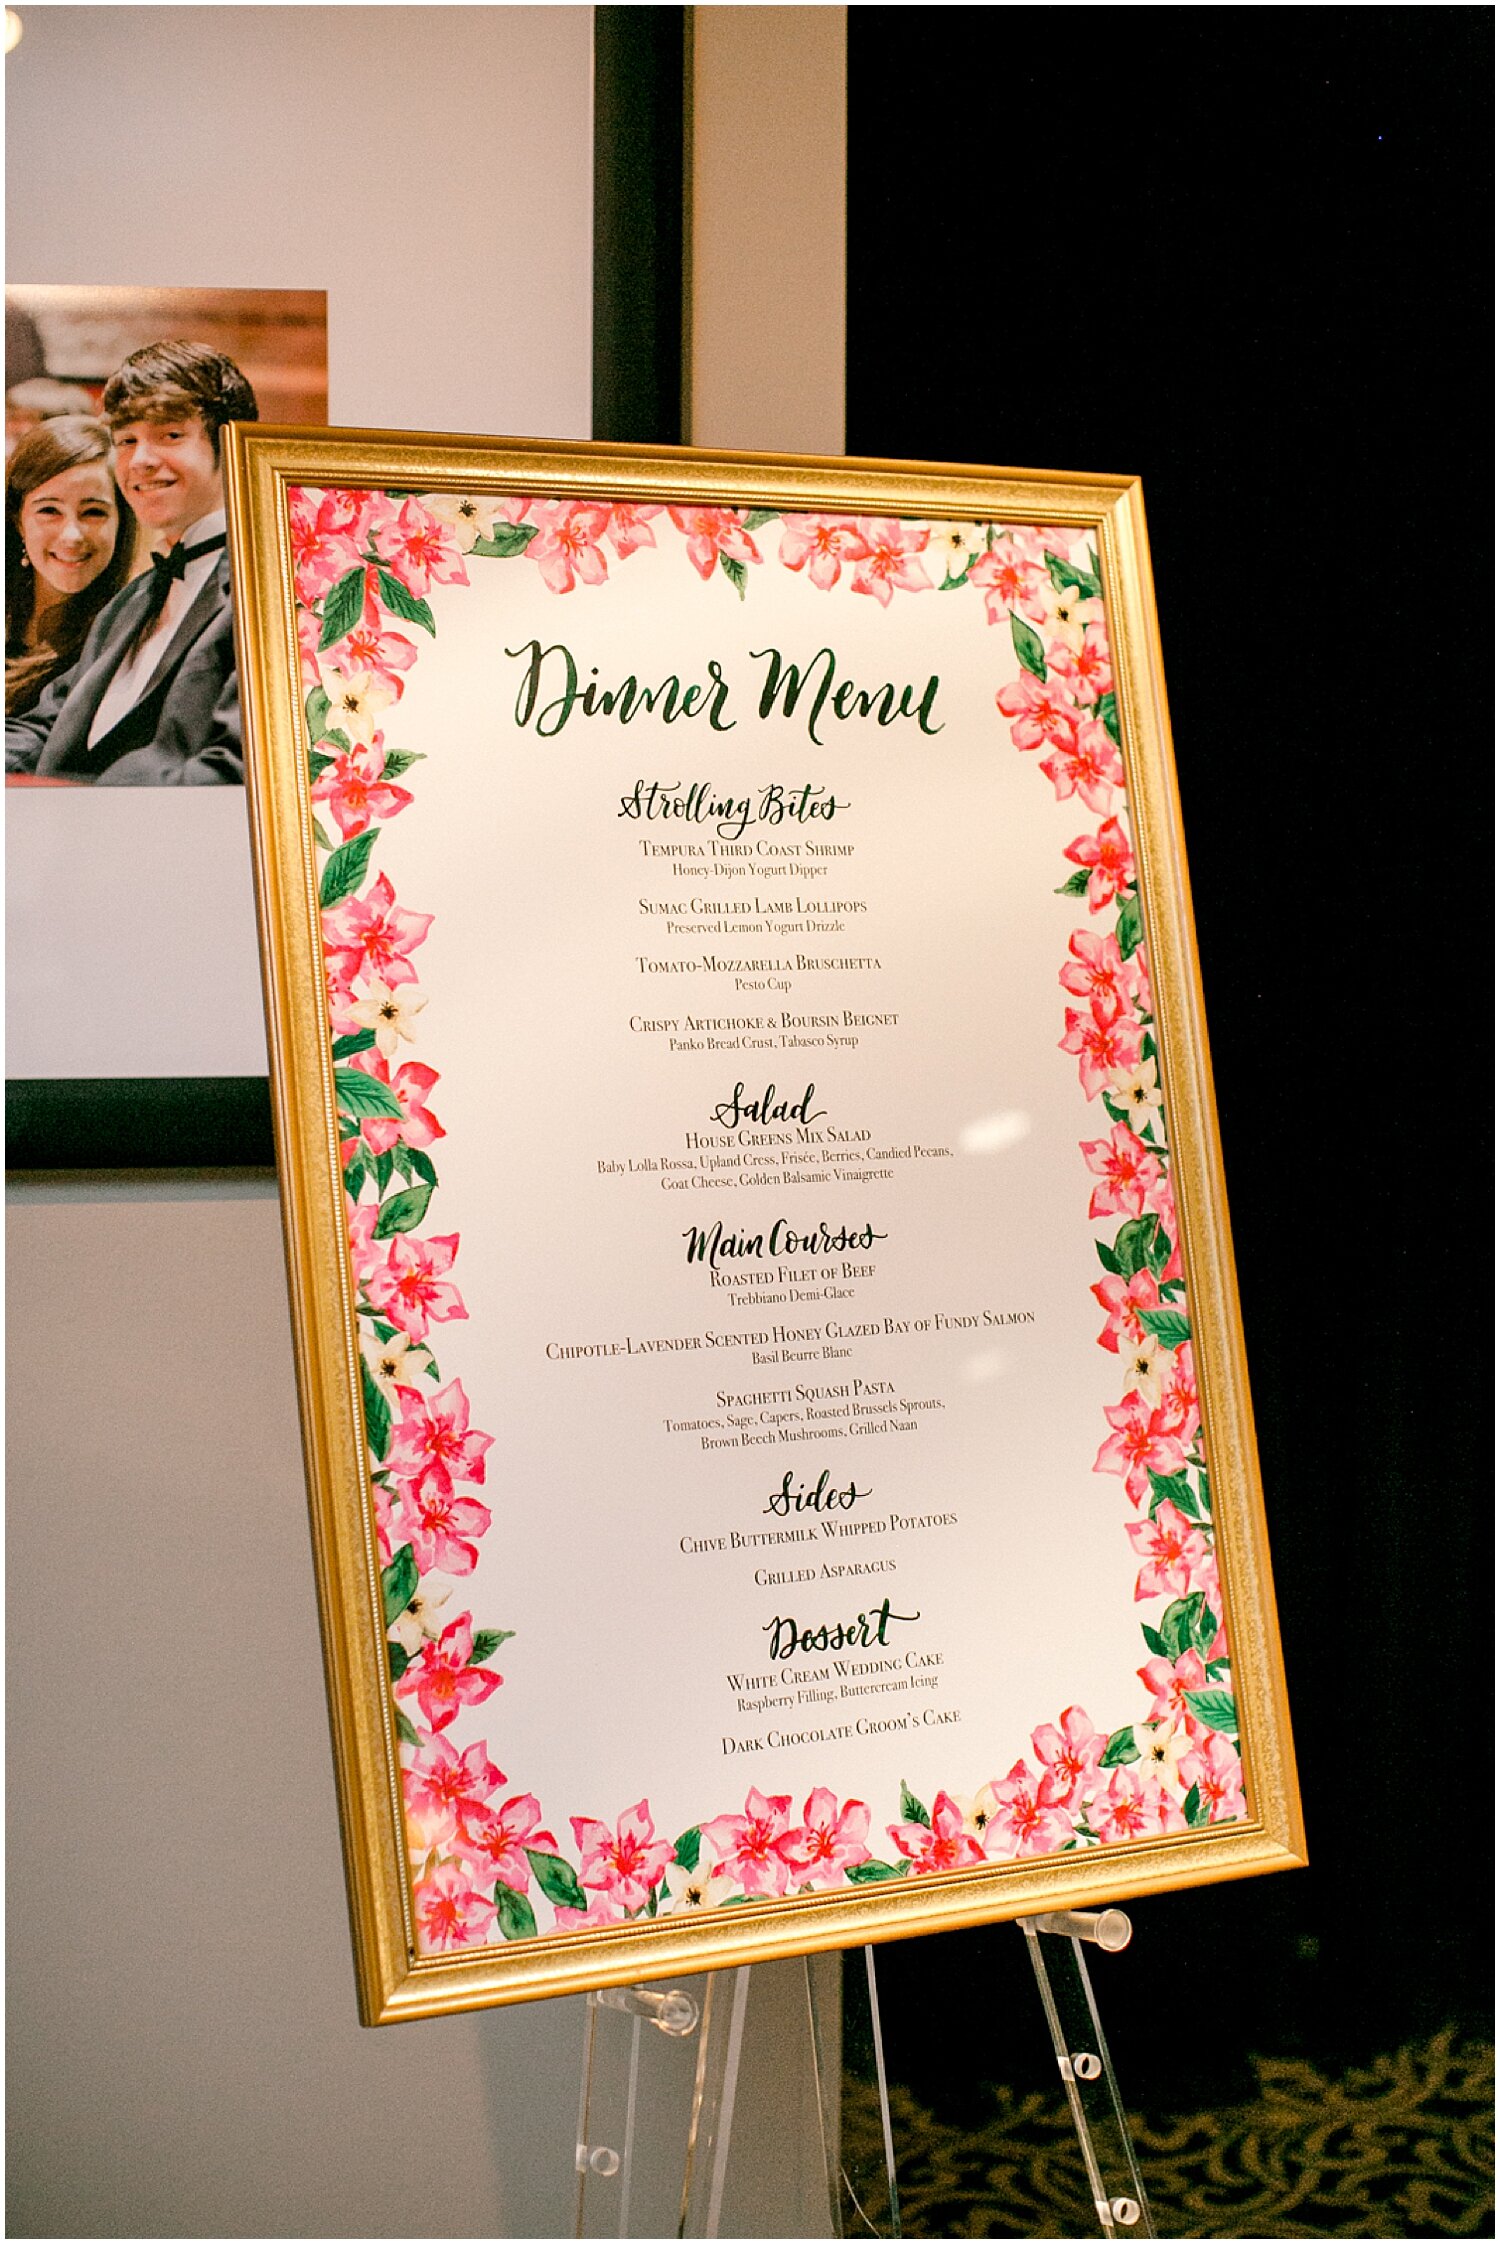  dinner menu wedding sign 